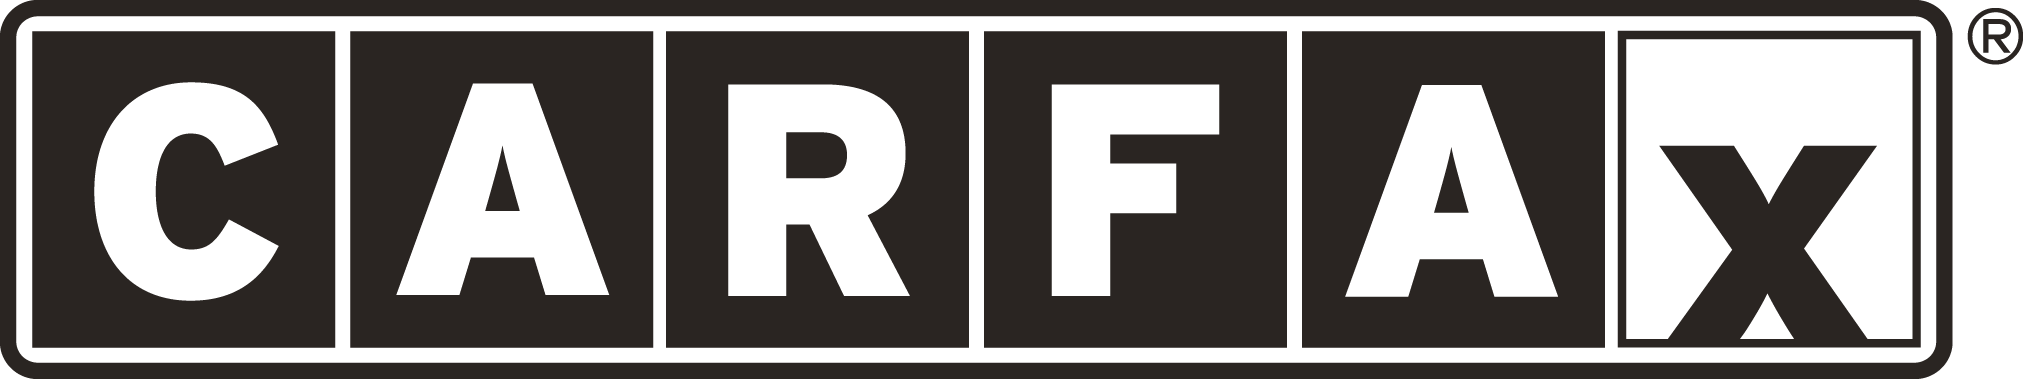 Carfax Logo png